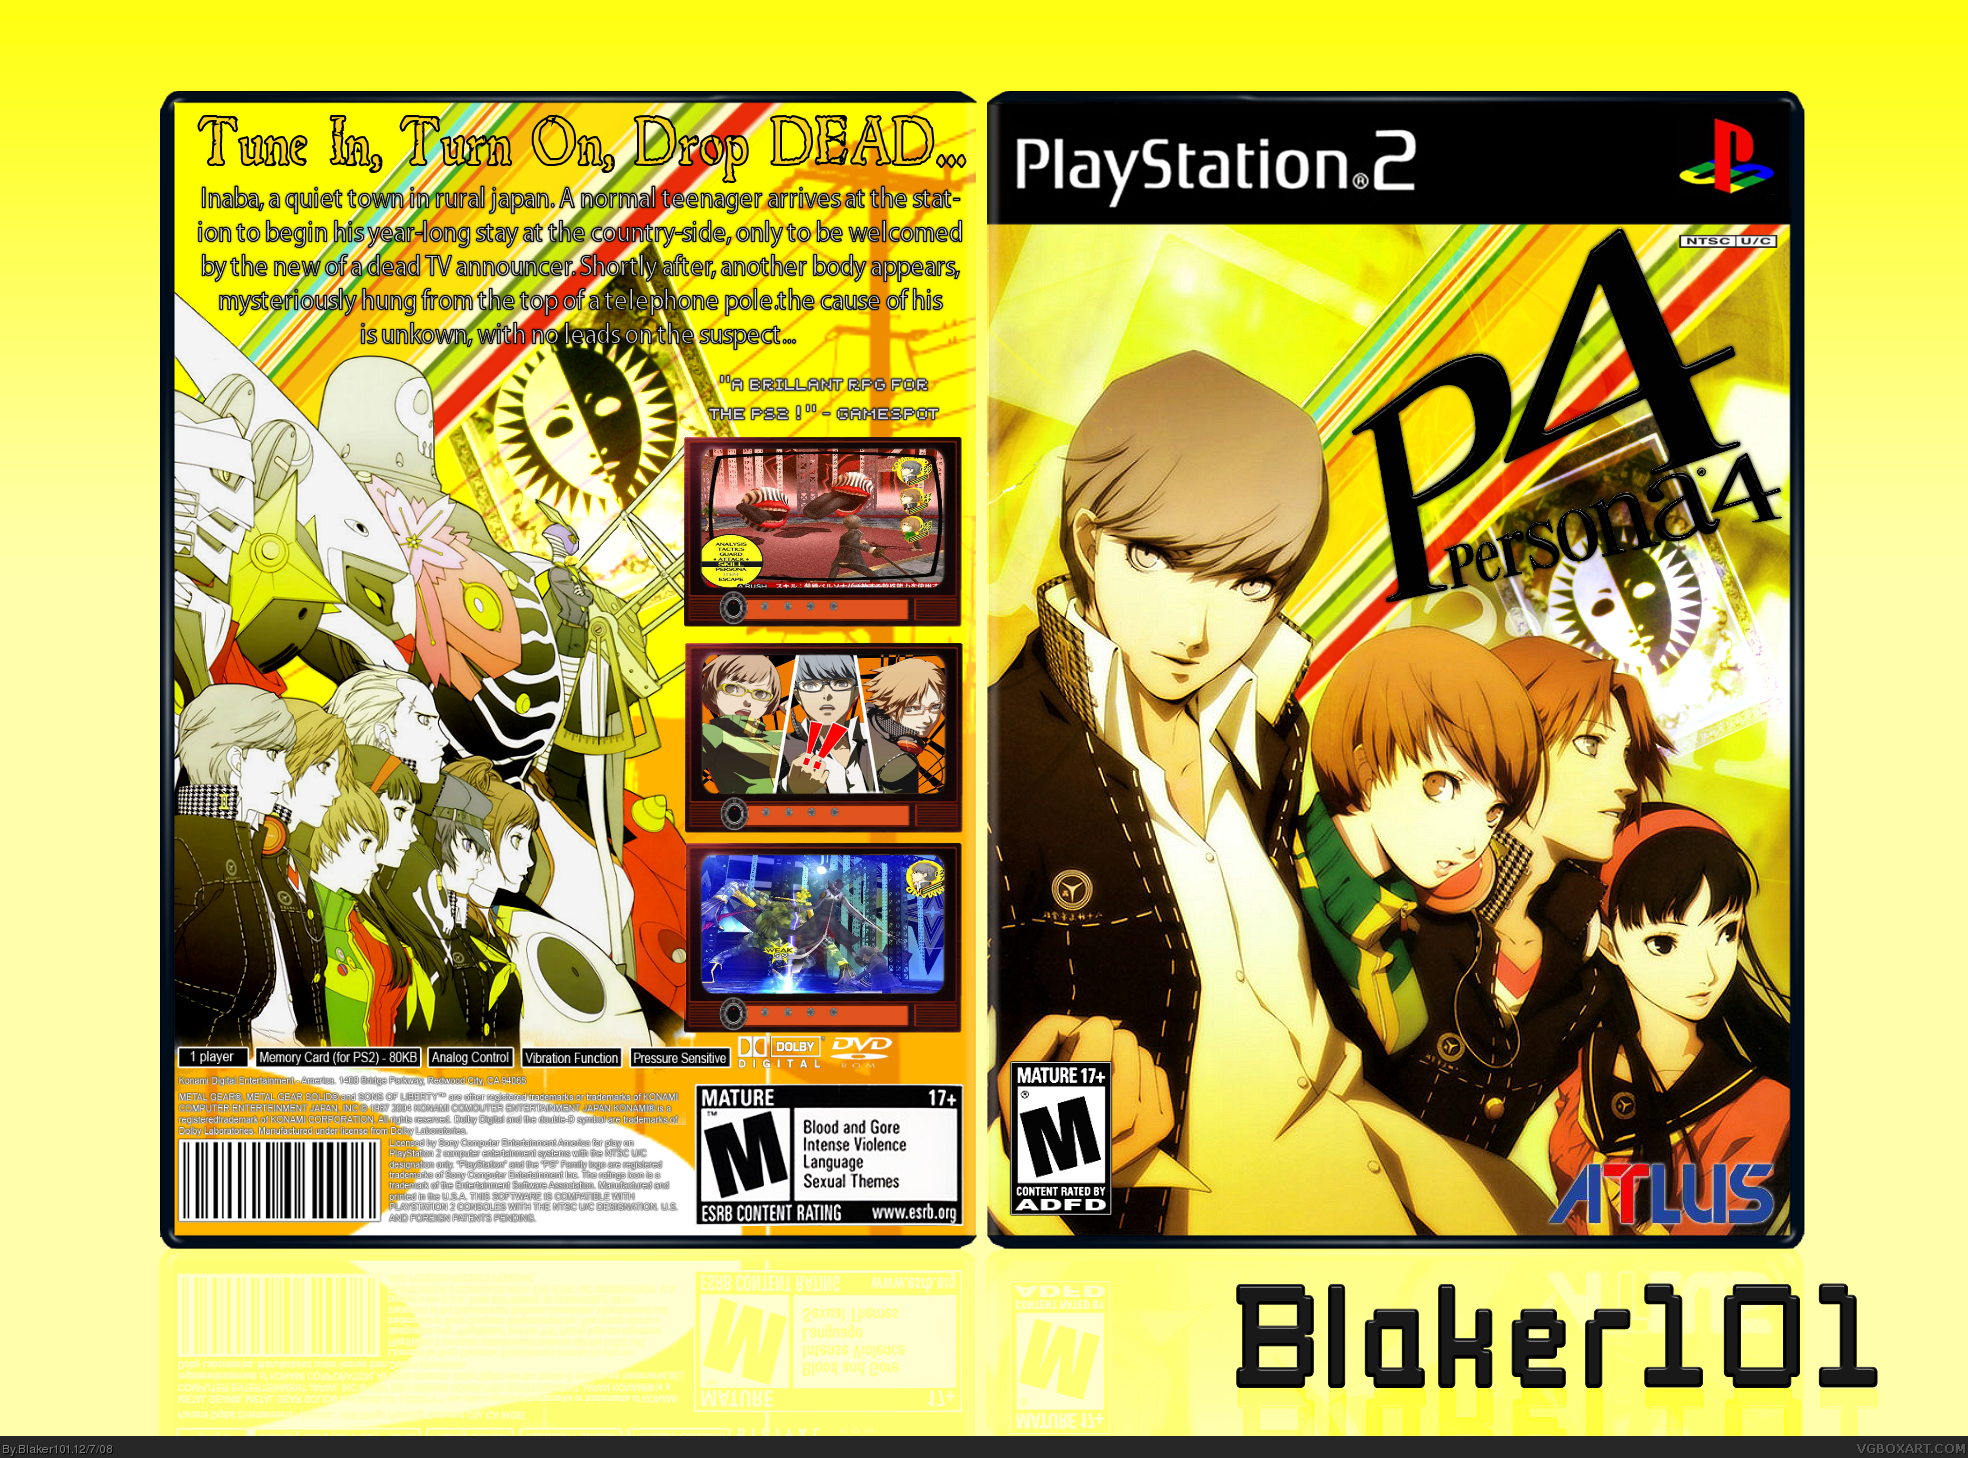 Persona 4 box cover